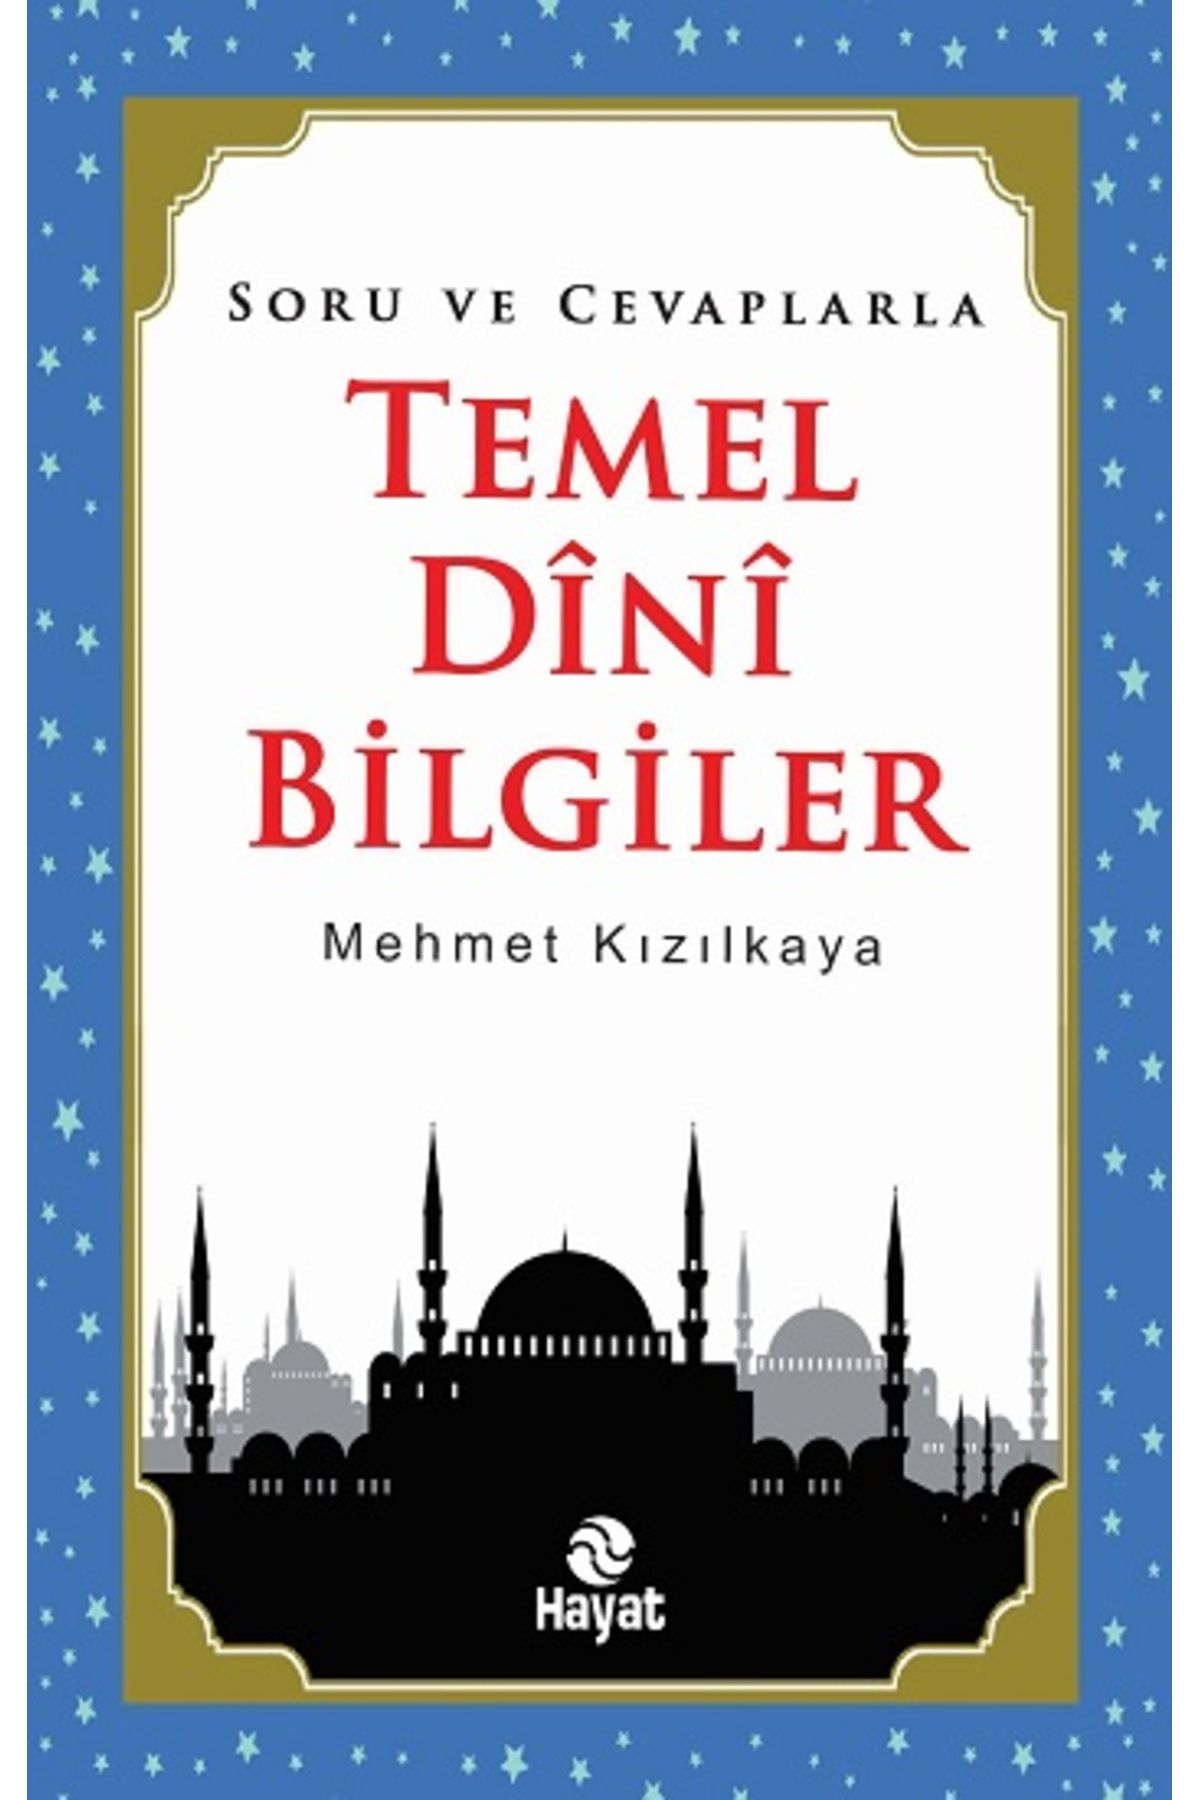 Hayat Yayınları Soru ve Cevaplarla Temel Dini Bilgiler kitabı - Mehmet Kızılkaya - Hayat Yayınları